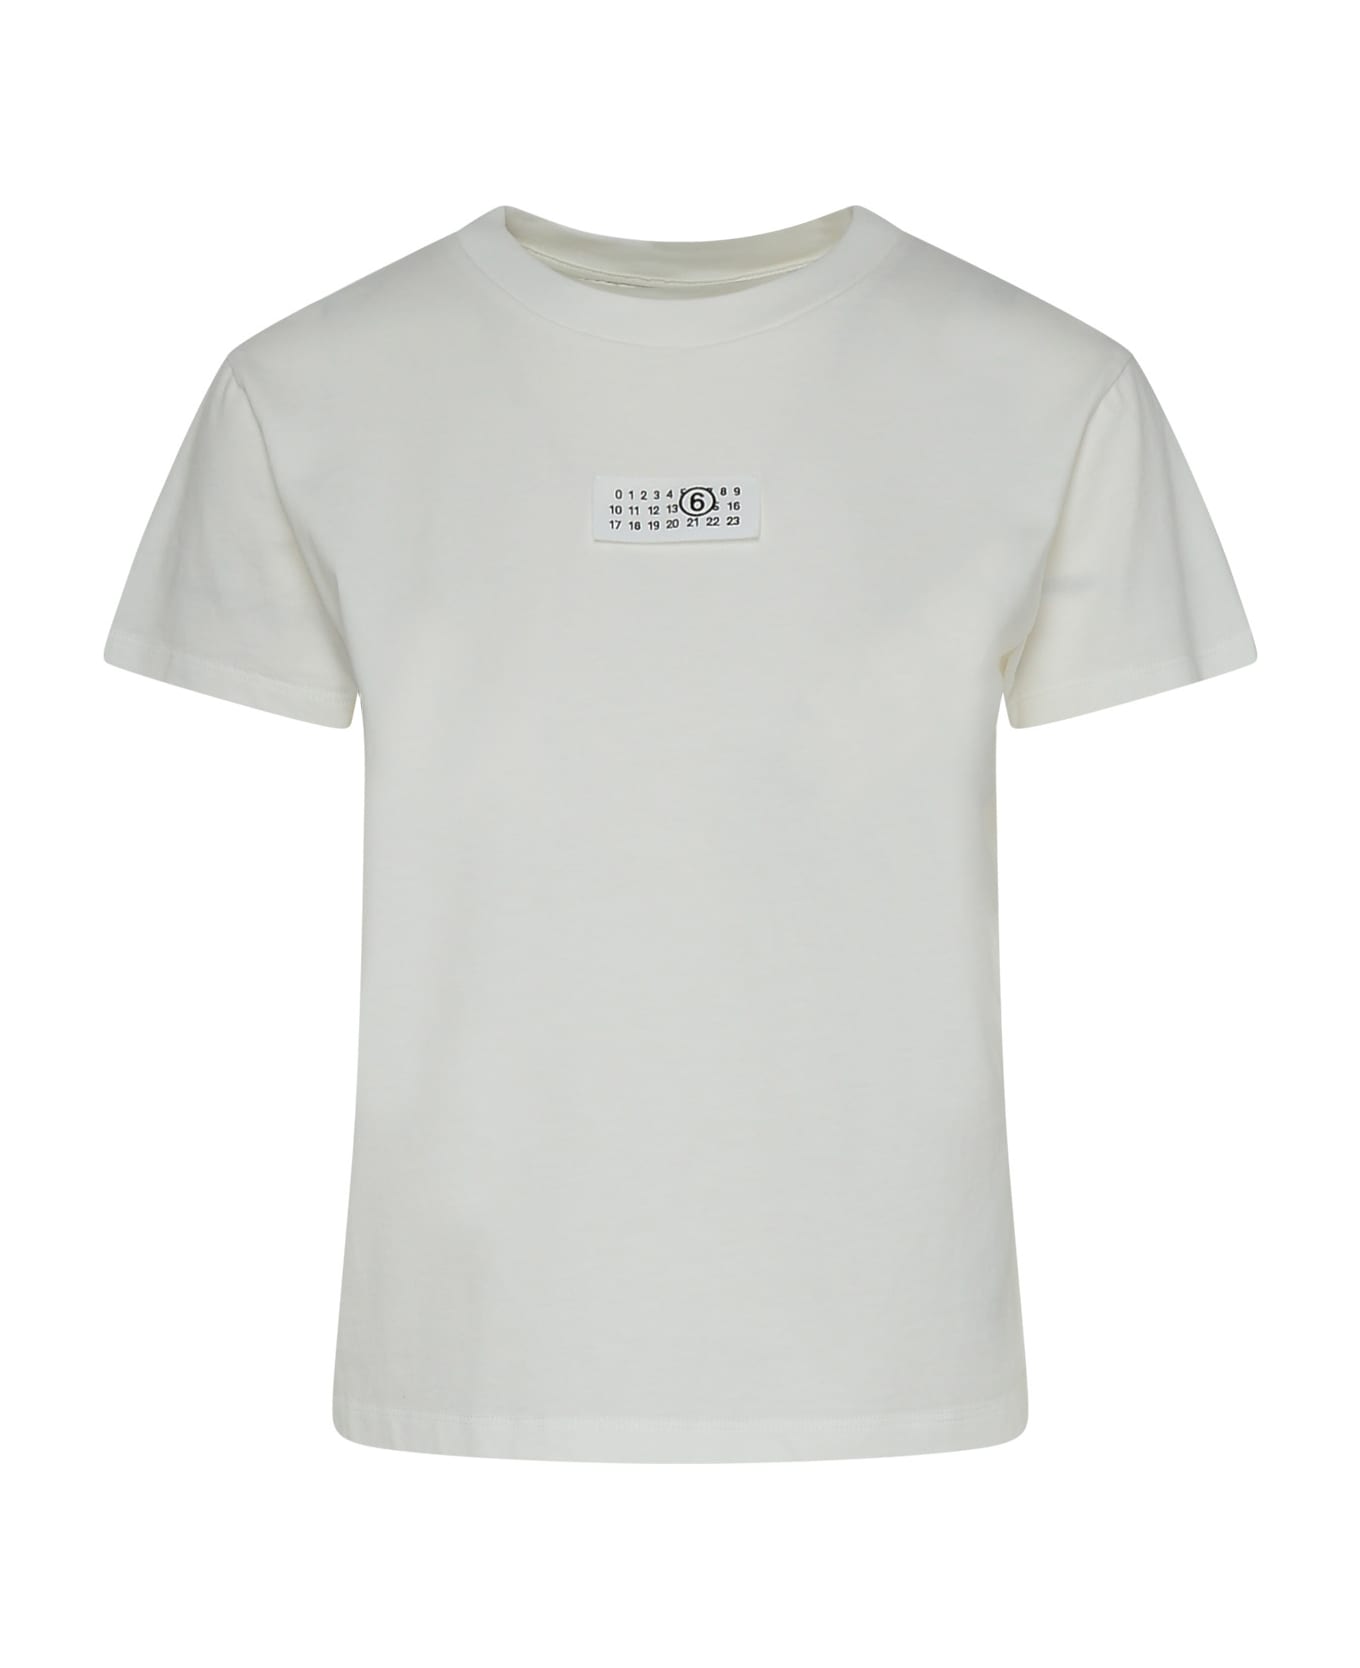 MM6 Maison Margiela White Cotton T-shirt - Non definito